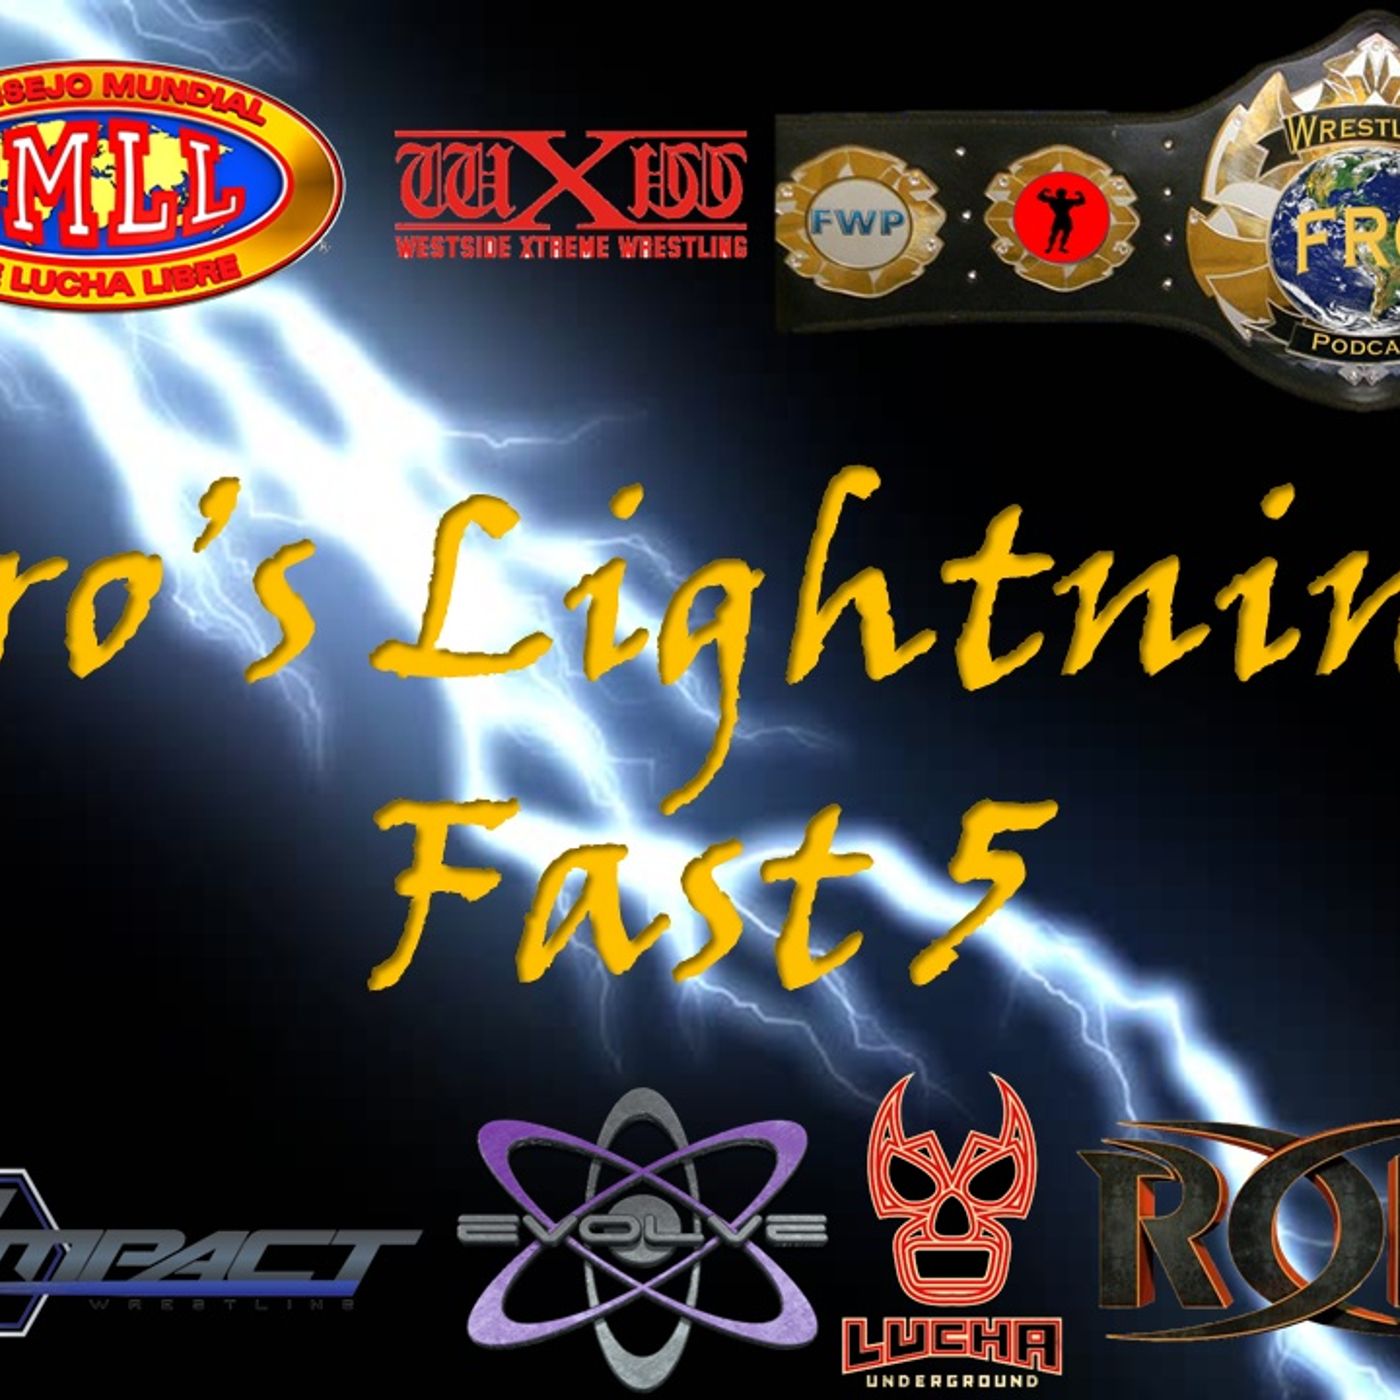 Fro’s Lightning Fast 5 - Wrestling News and Rumors